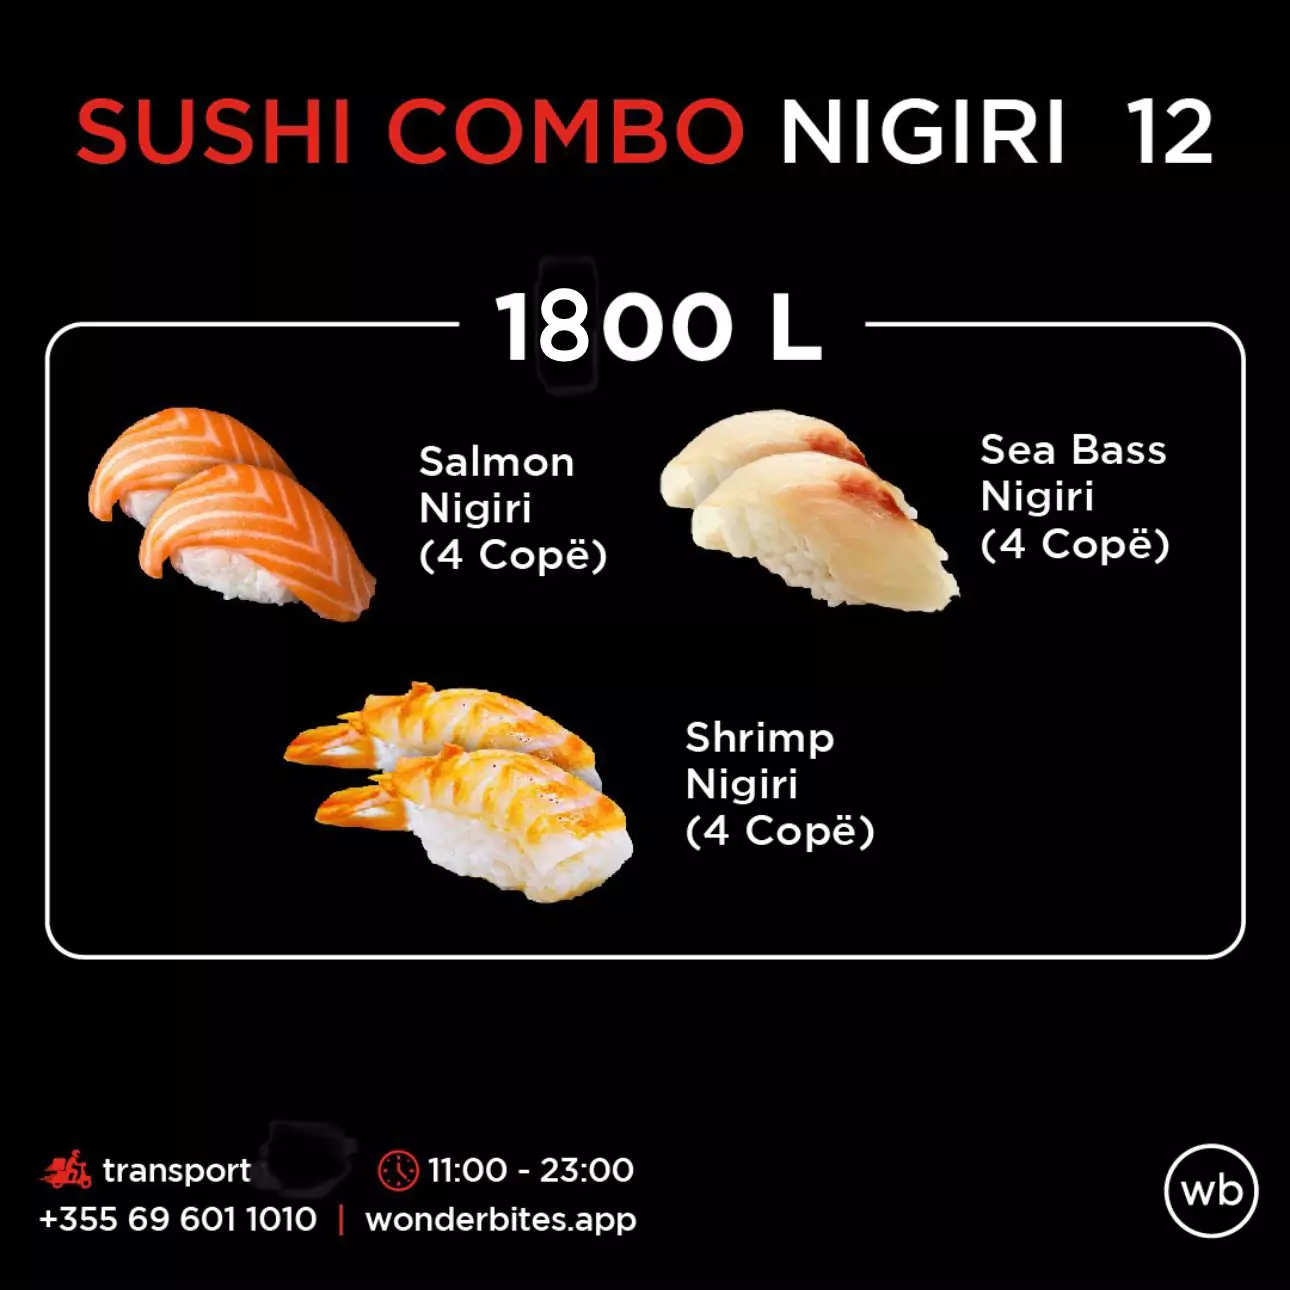 Sushi Combo Nigiri 12